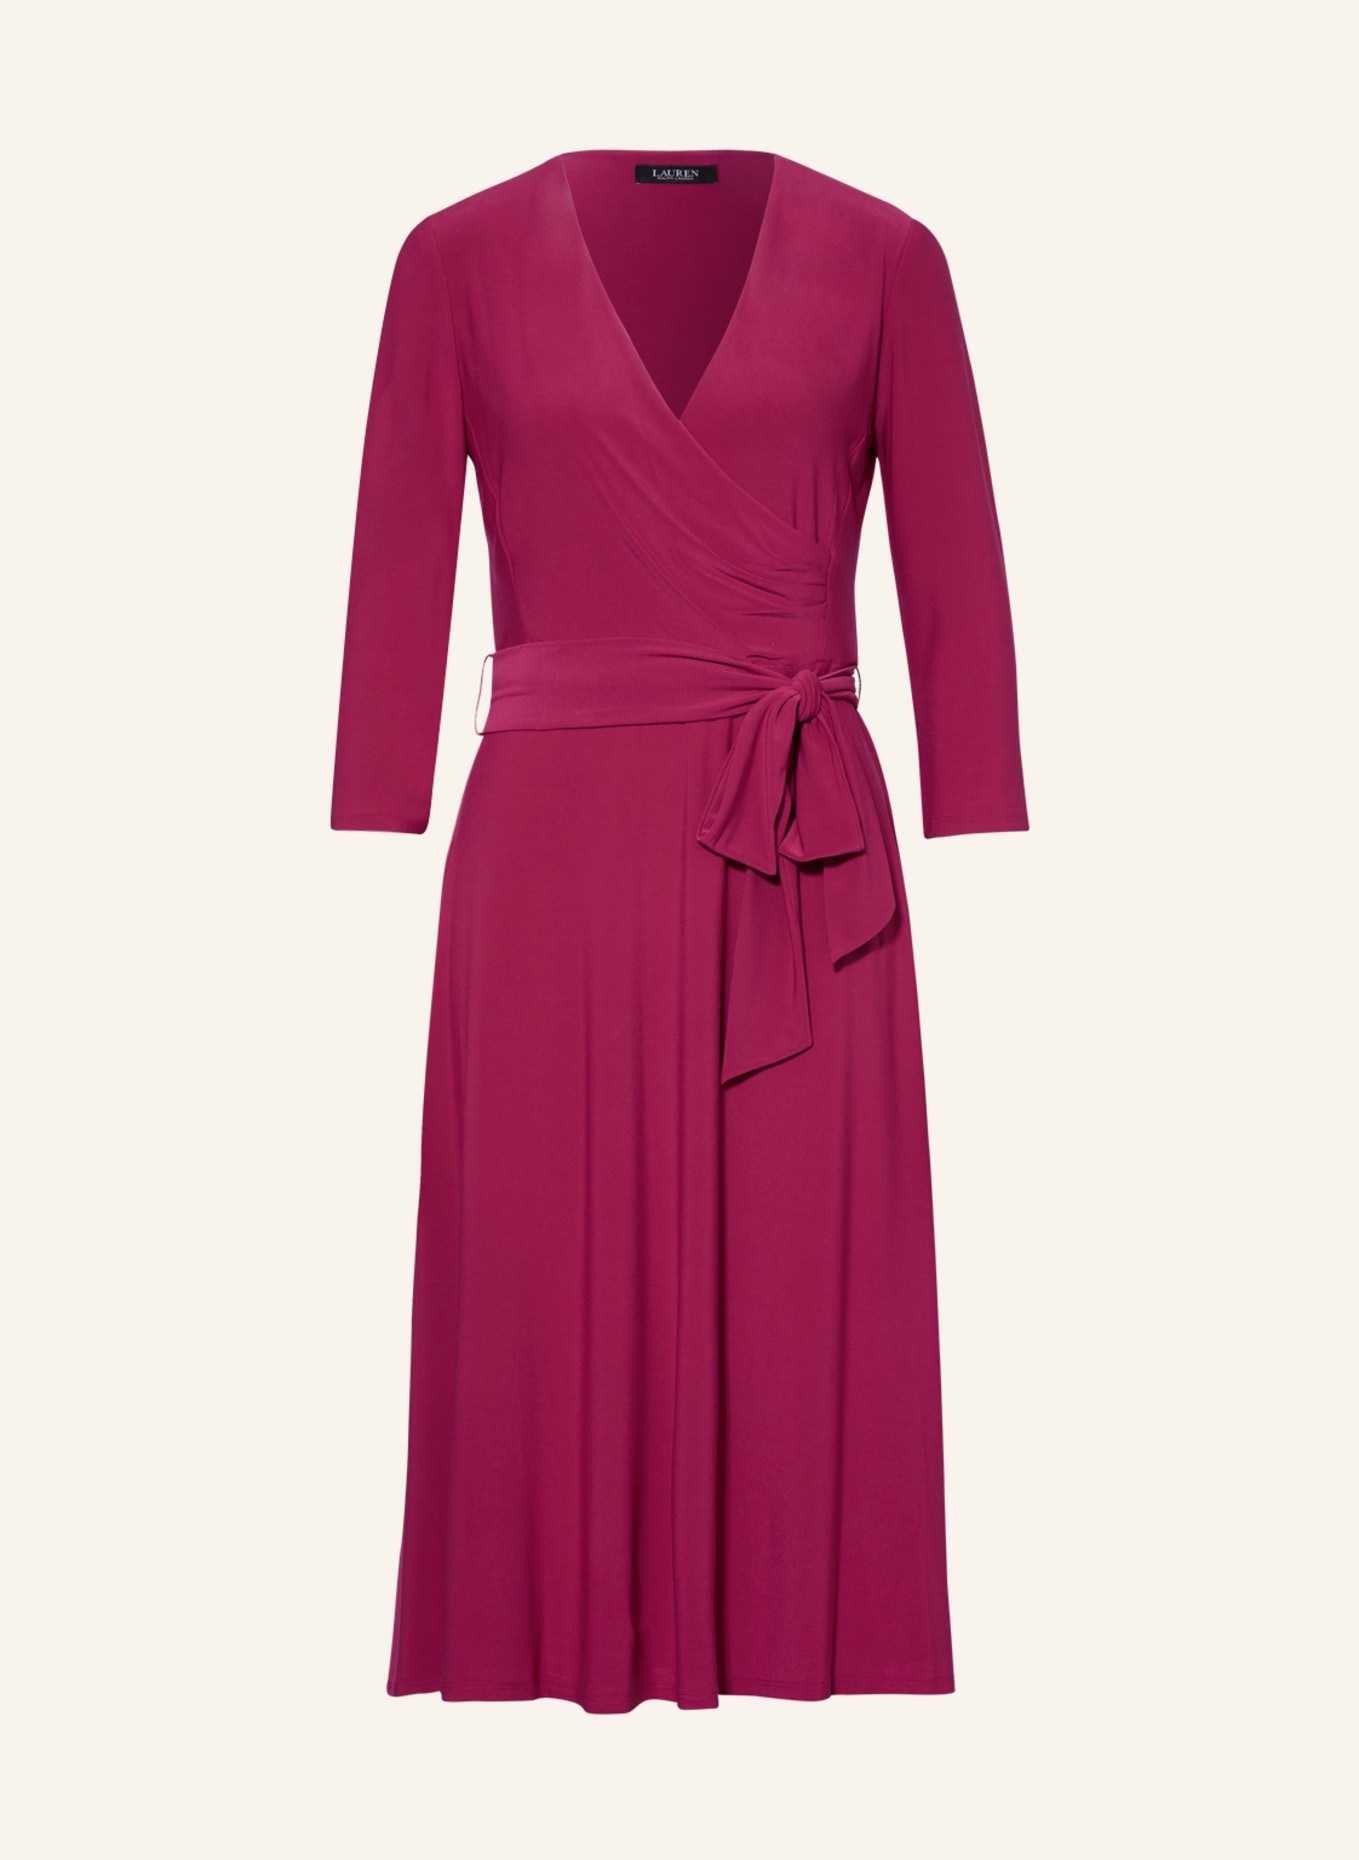 LAUREN RALPH LAUREN Kleid mit 3/4-Arm, Farbe: FUCHSIA (Bild 1)